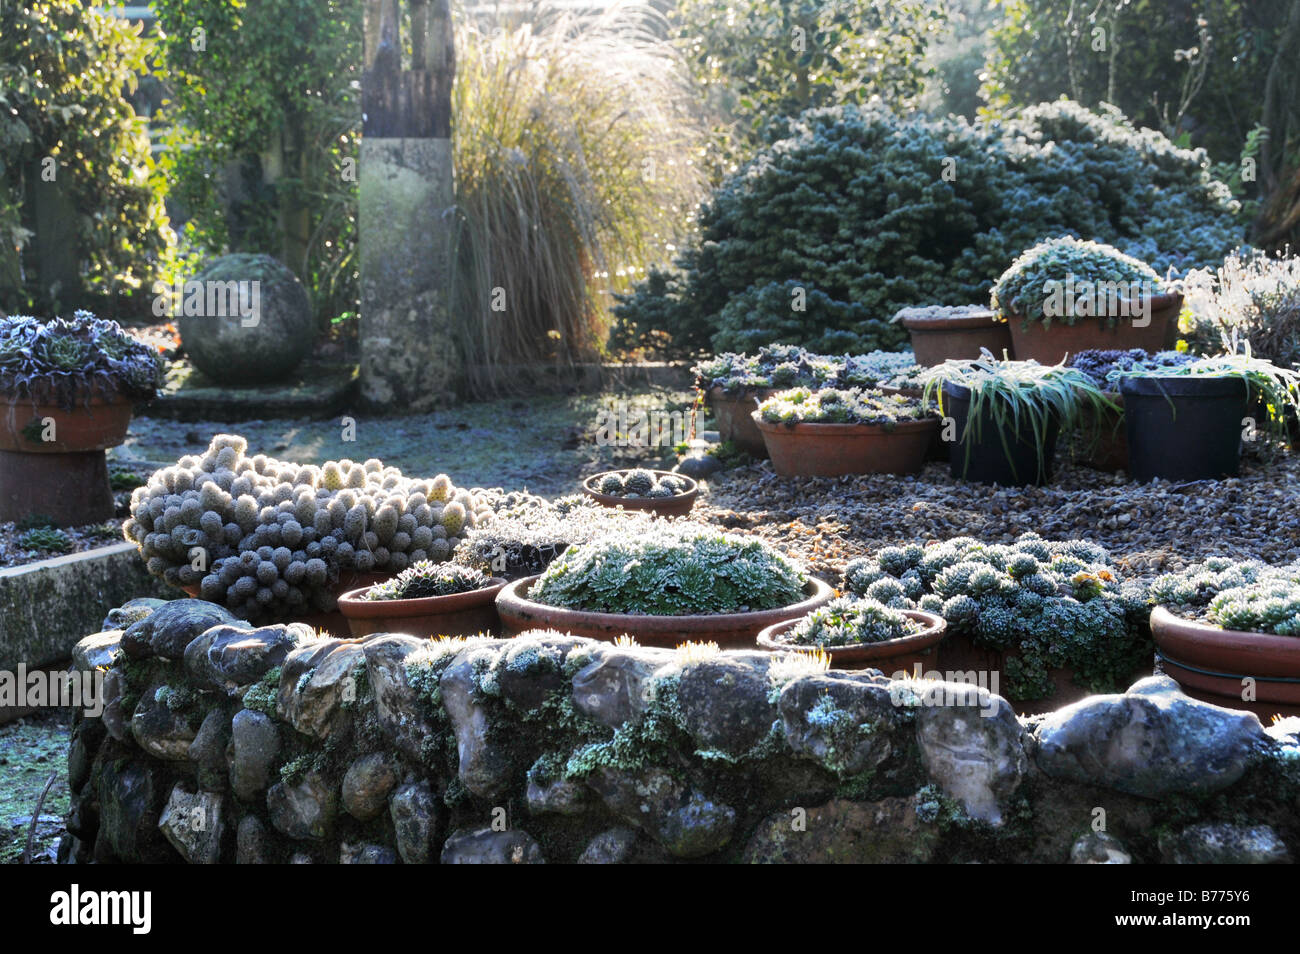 Sunny retroiluminado de filmación frosty jardín con plantas en macetas incluyendo sempervivums UK Diciembre Foto de stock